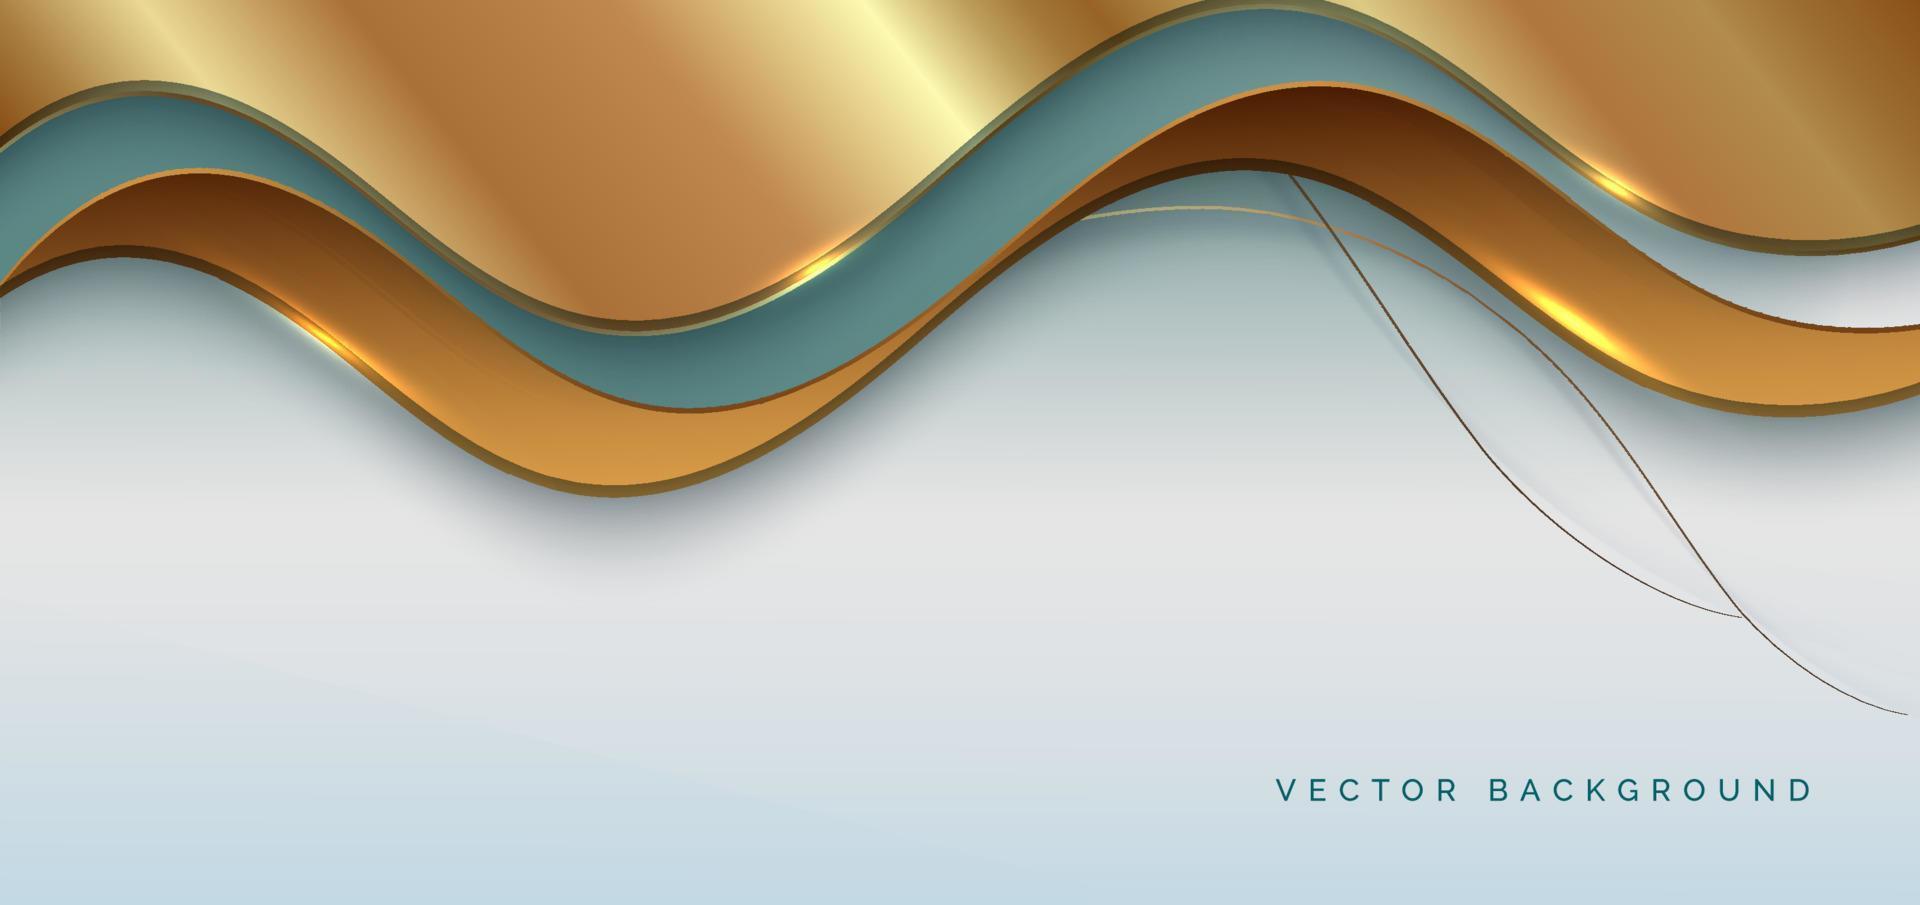 abstracte luxe 3d achtergrond gouden elegante lijn op golfvorm overlappende op zachte groene achtergrond met kopie ruimte voor tekst. vector